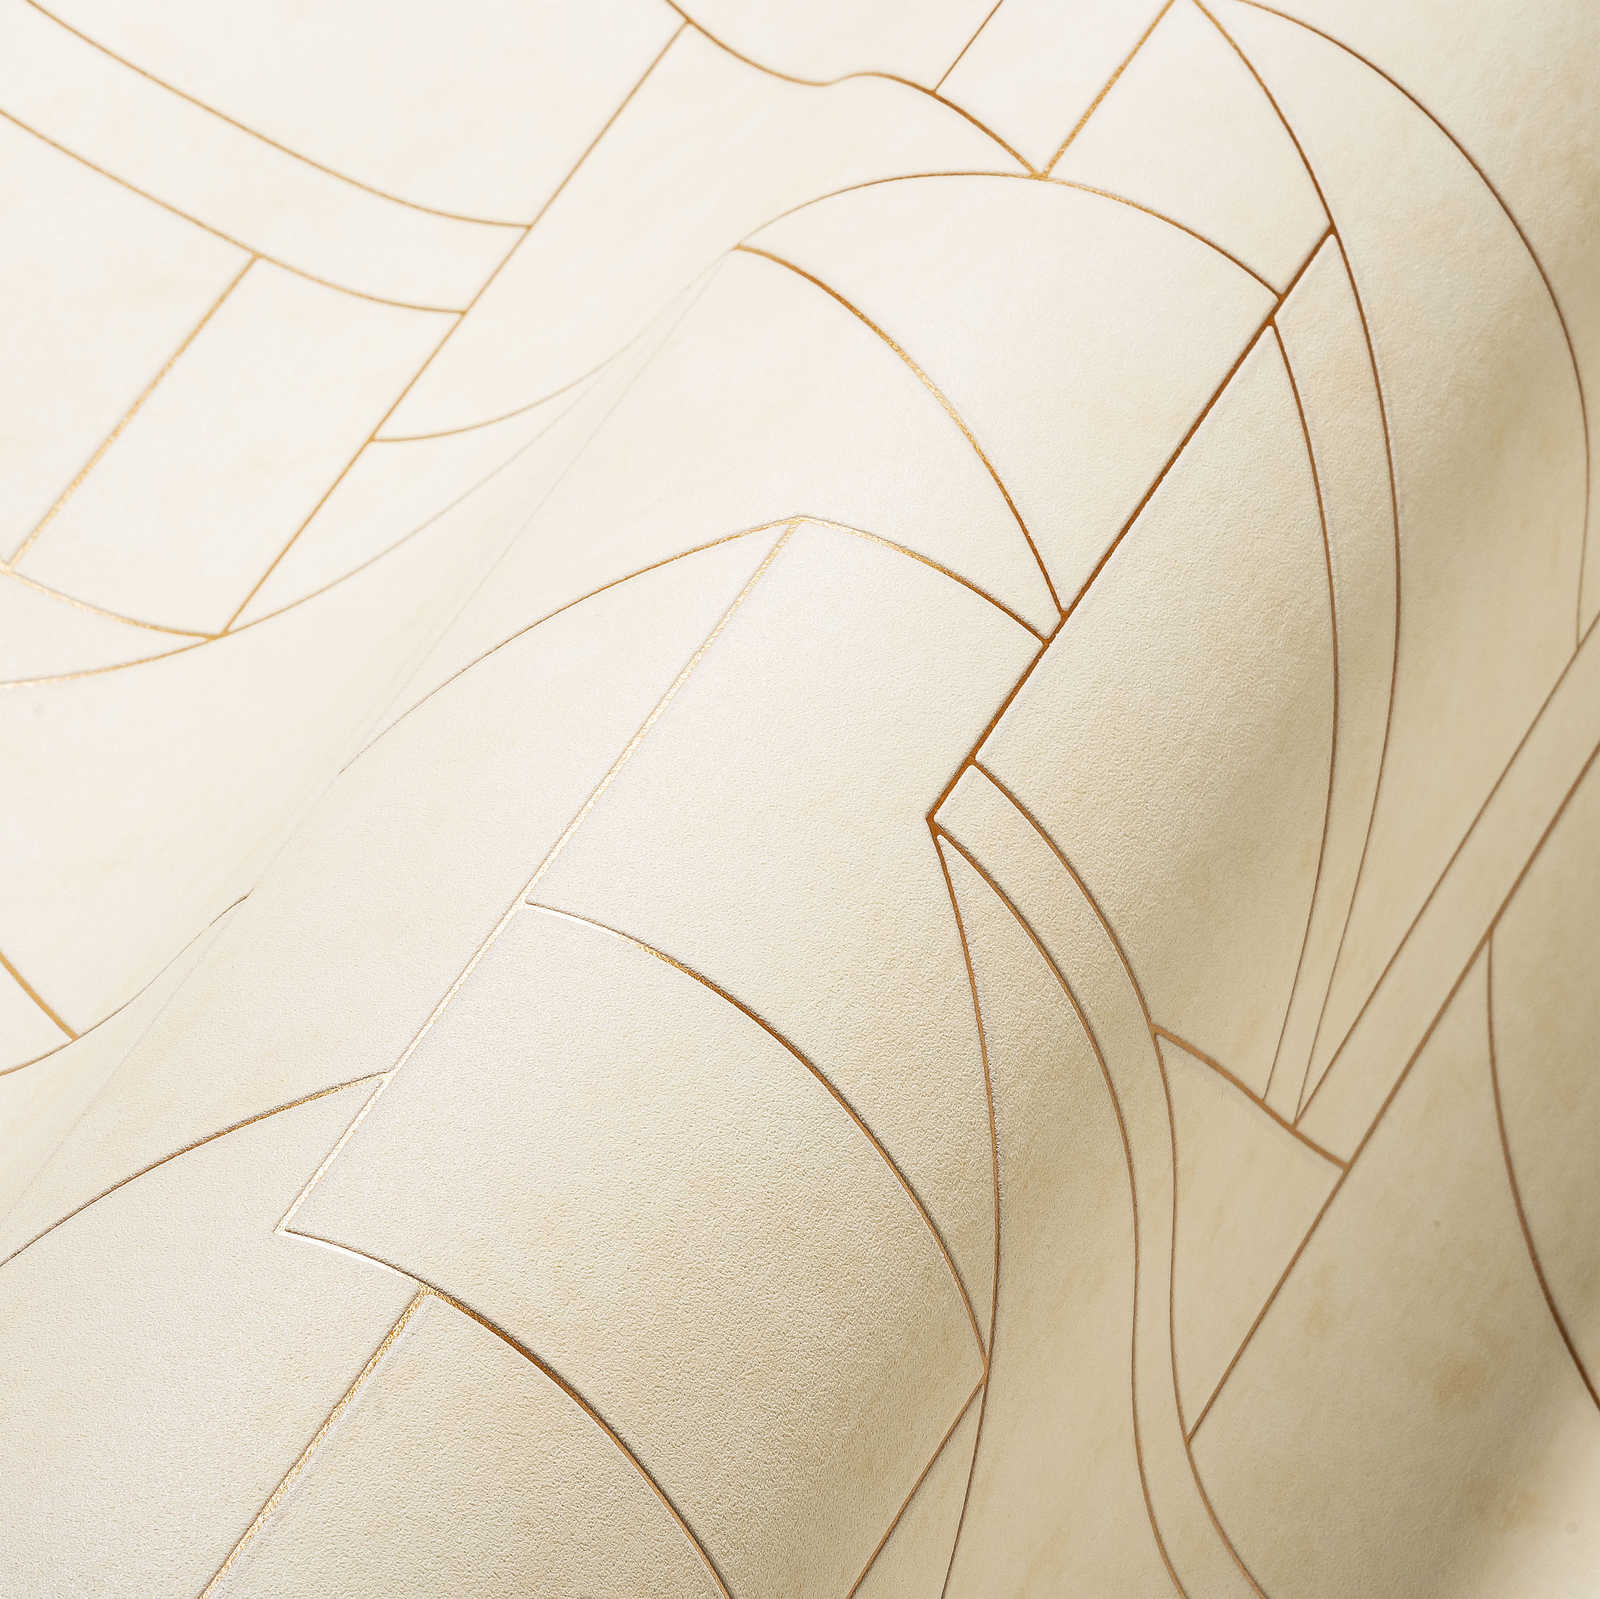             Grafisch behang met modern lijnenspel - wit, crème, brons
        